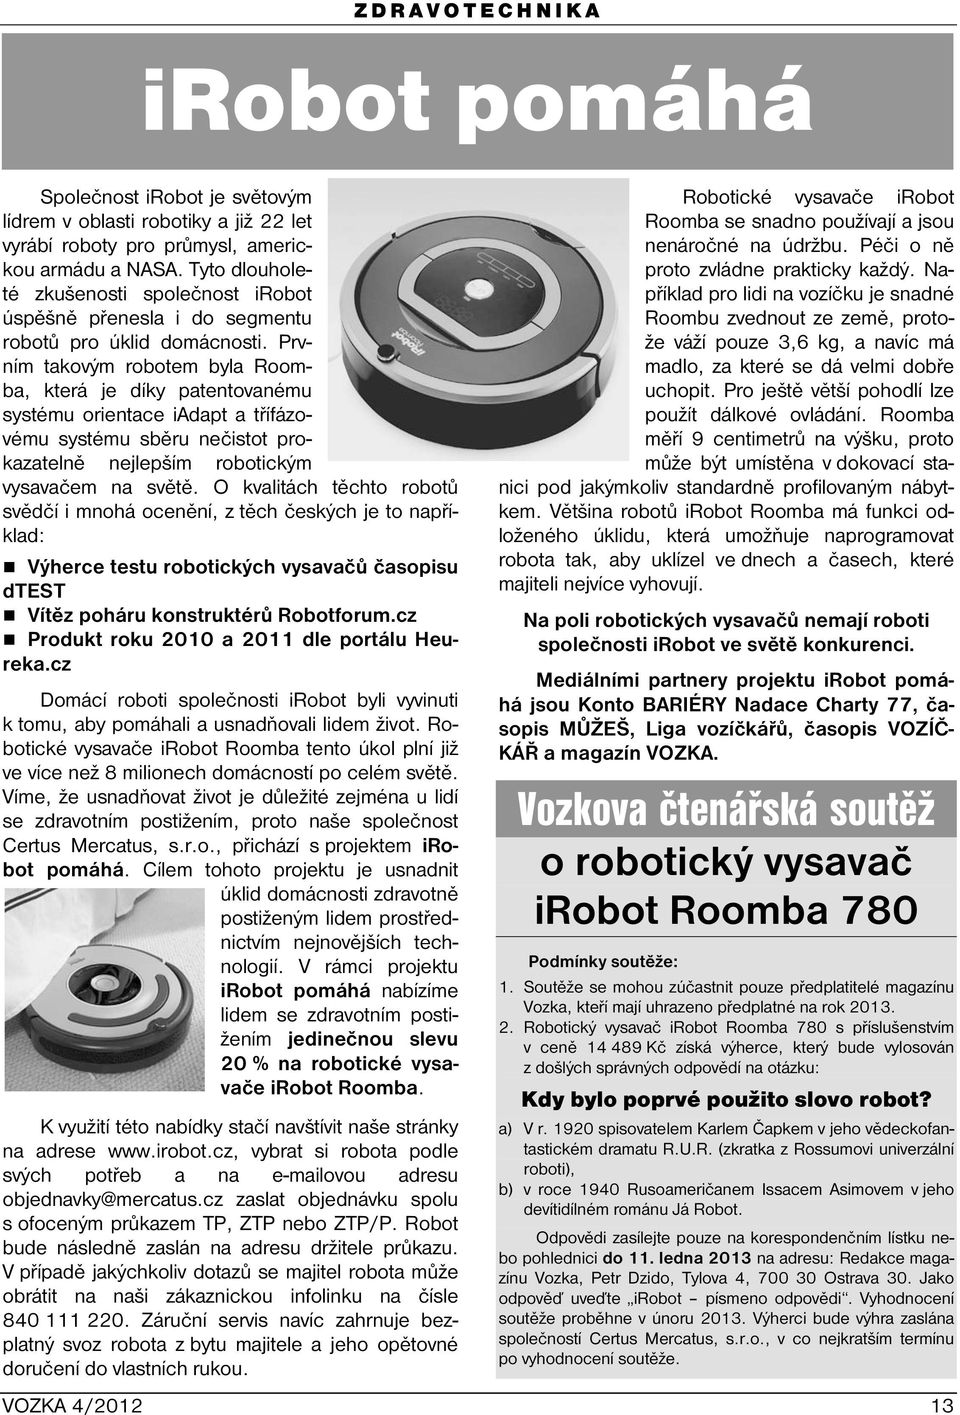 Prvním takovým robotem byla Roomba, která je díky patentovanému systému orientace iadapt a třífázovému systému sběru nečistot prokazatelně nejlepším robotickým vysavačem na světě.